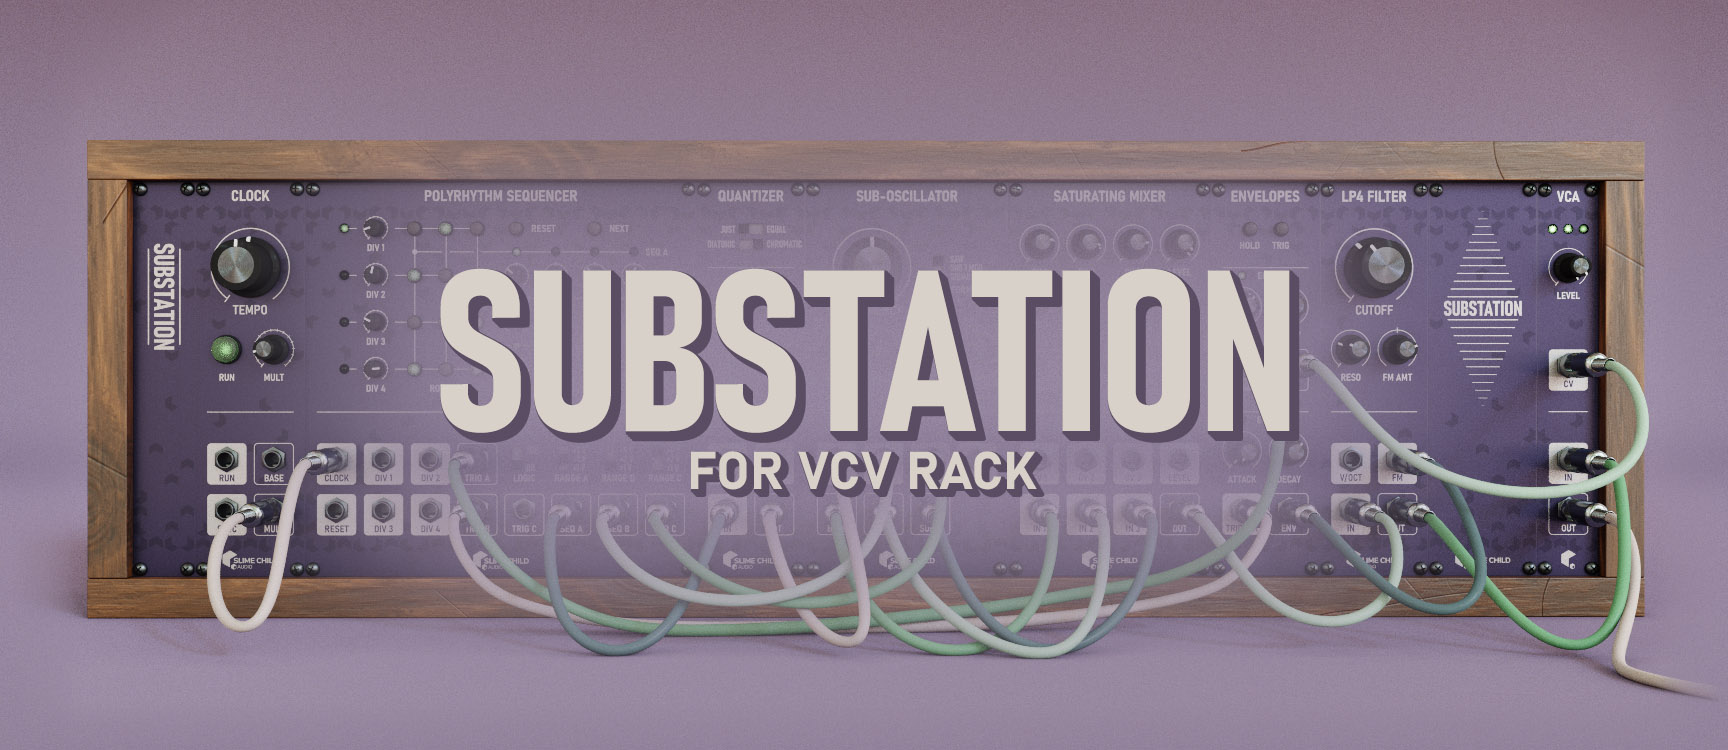 Substation for VCV Rack